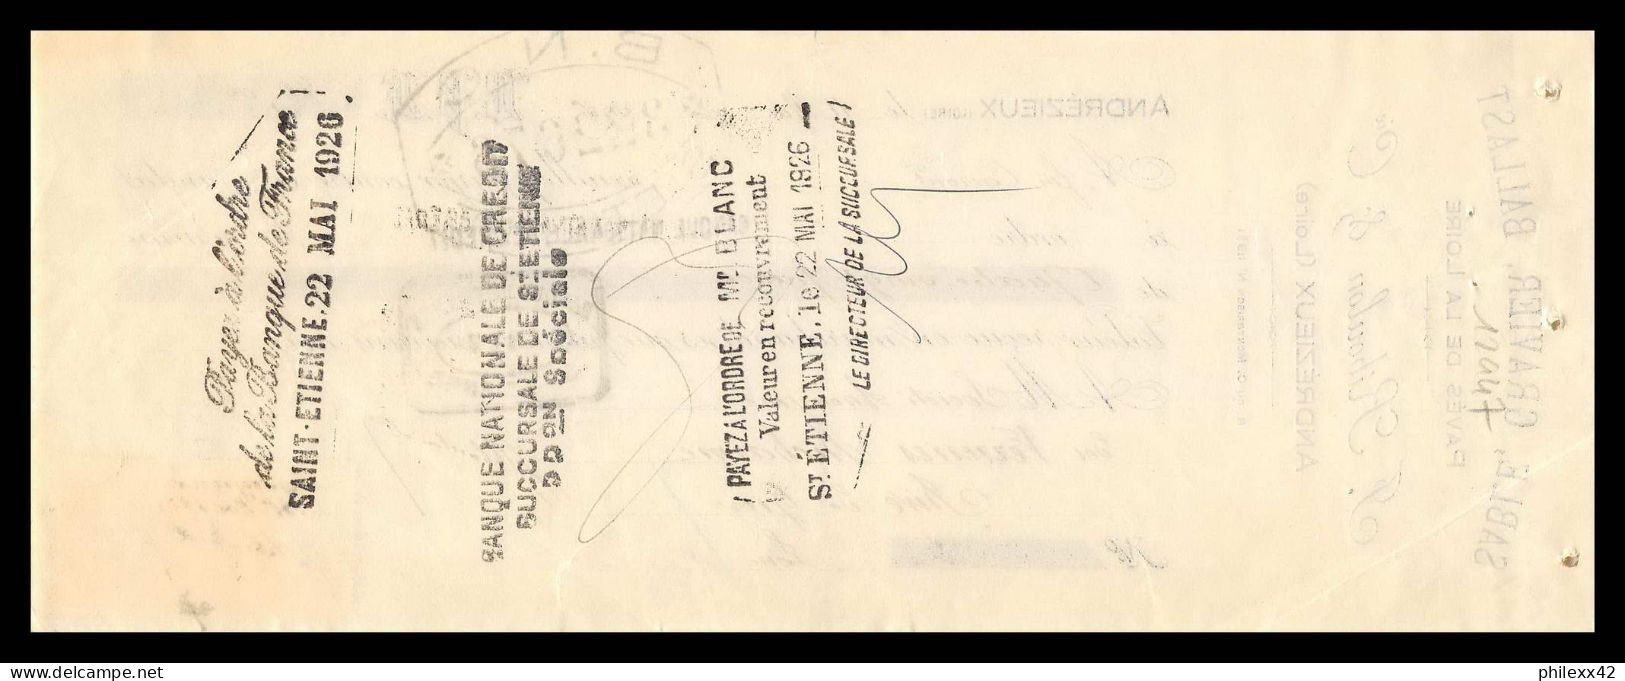 12947 Ballast Andrezieux 1926 Verreries Richarme Rive De Gier Loire 15c Affiches Timbre Fiscal Fiscaux Sur Document  - Lettres & Documents